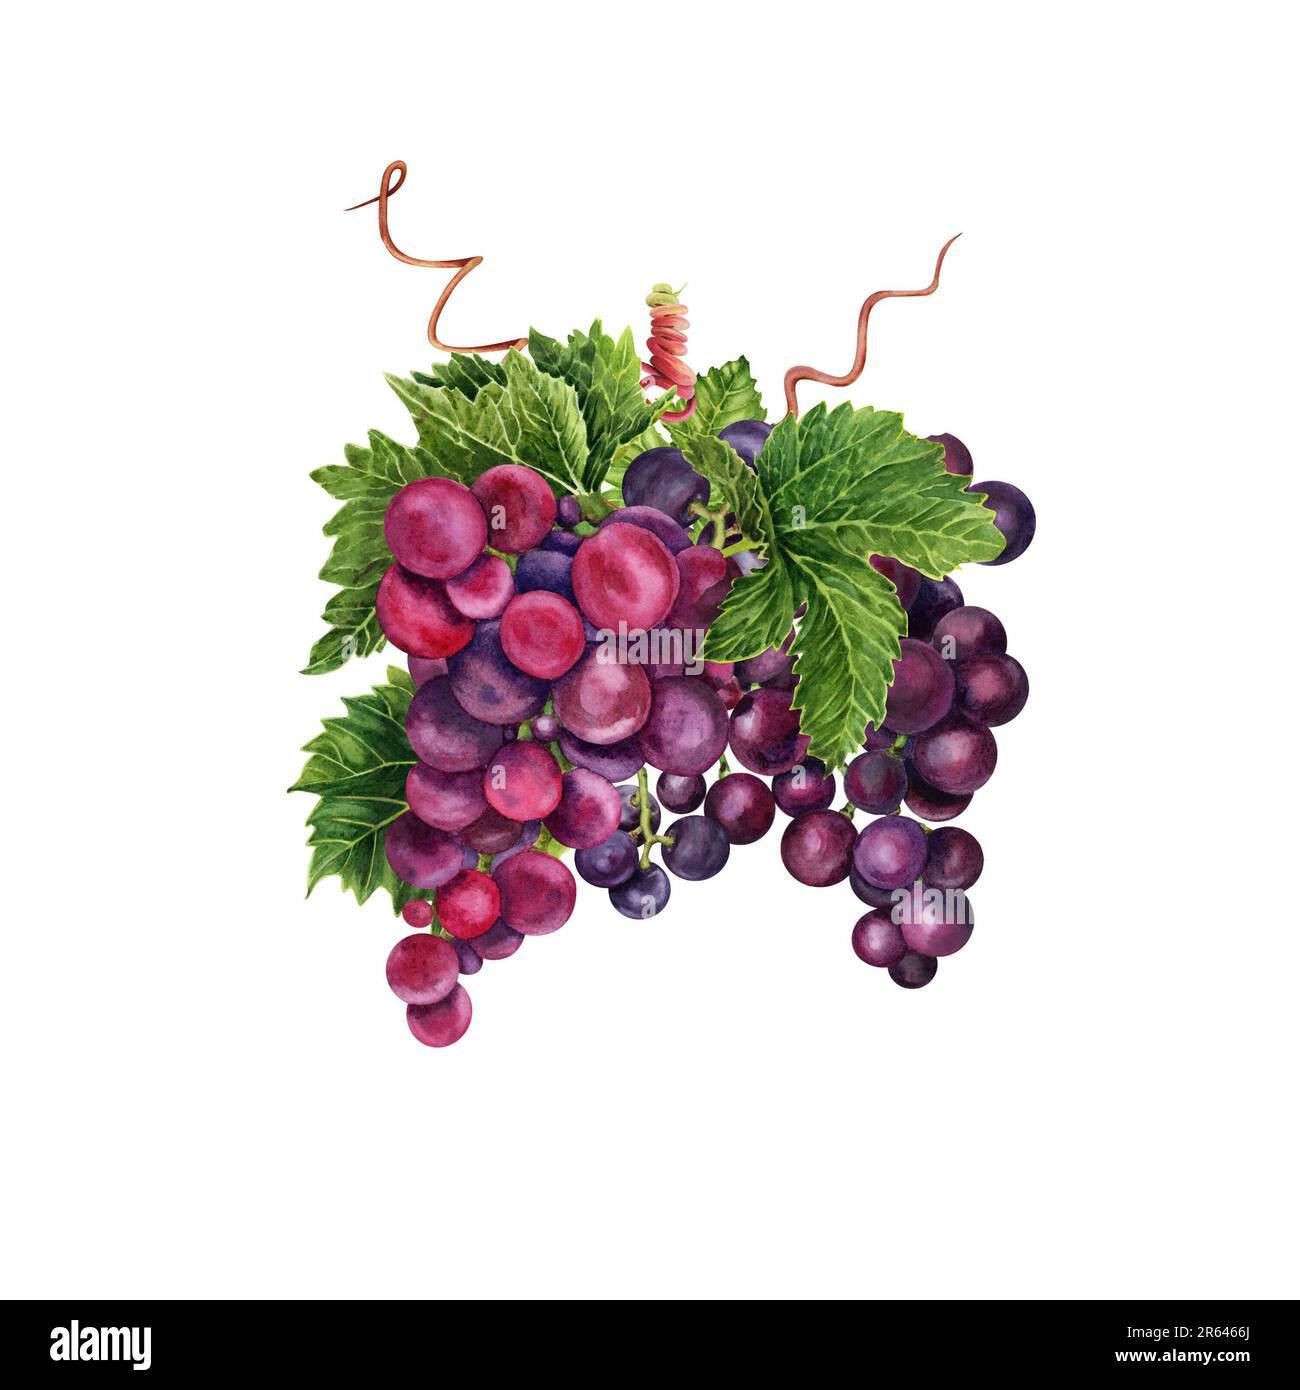 Bouquet de raisins rouges avec des feuilles de vigne vertes et des tendrils. Illustration aquarelle dessinée à la main isolée sur fond blanc. Banque D'Images